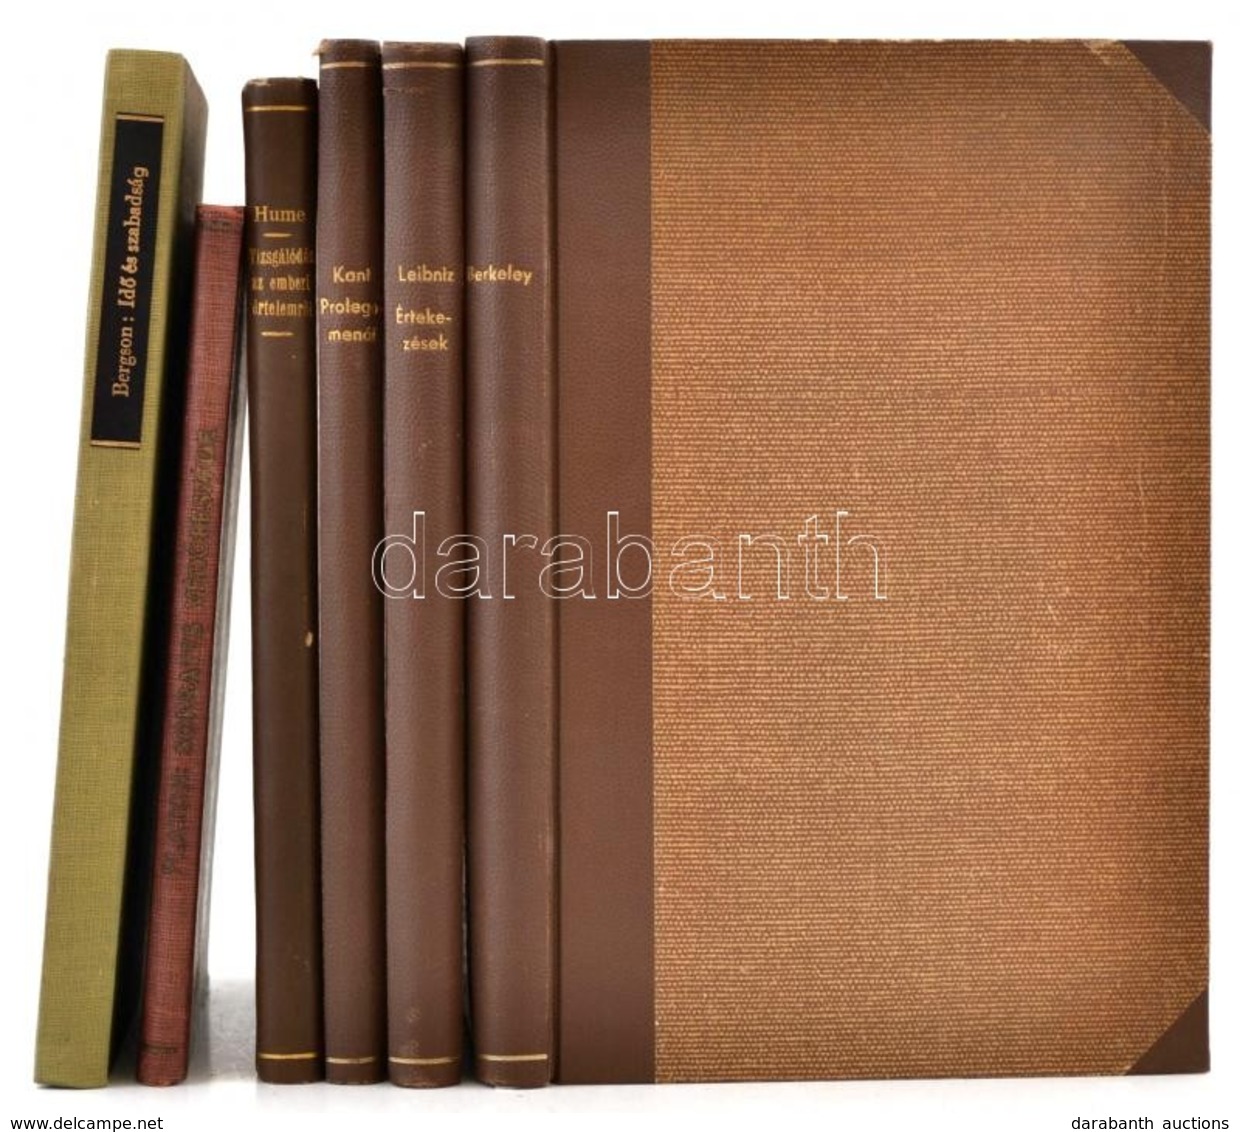 Filozófiai Írók Tára 5 Kötete és Az Officina Könyvtár 1 Kötete:
[David] Hume: Vizsgálódás Az Emberi értelemről. Fordítot - Sin Clasificación